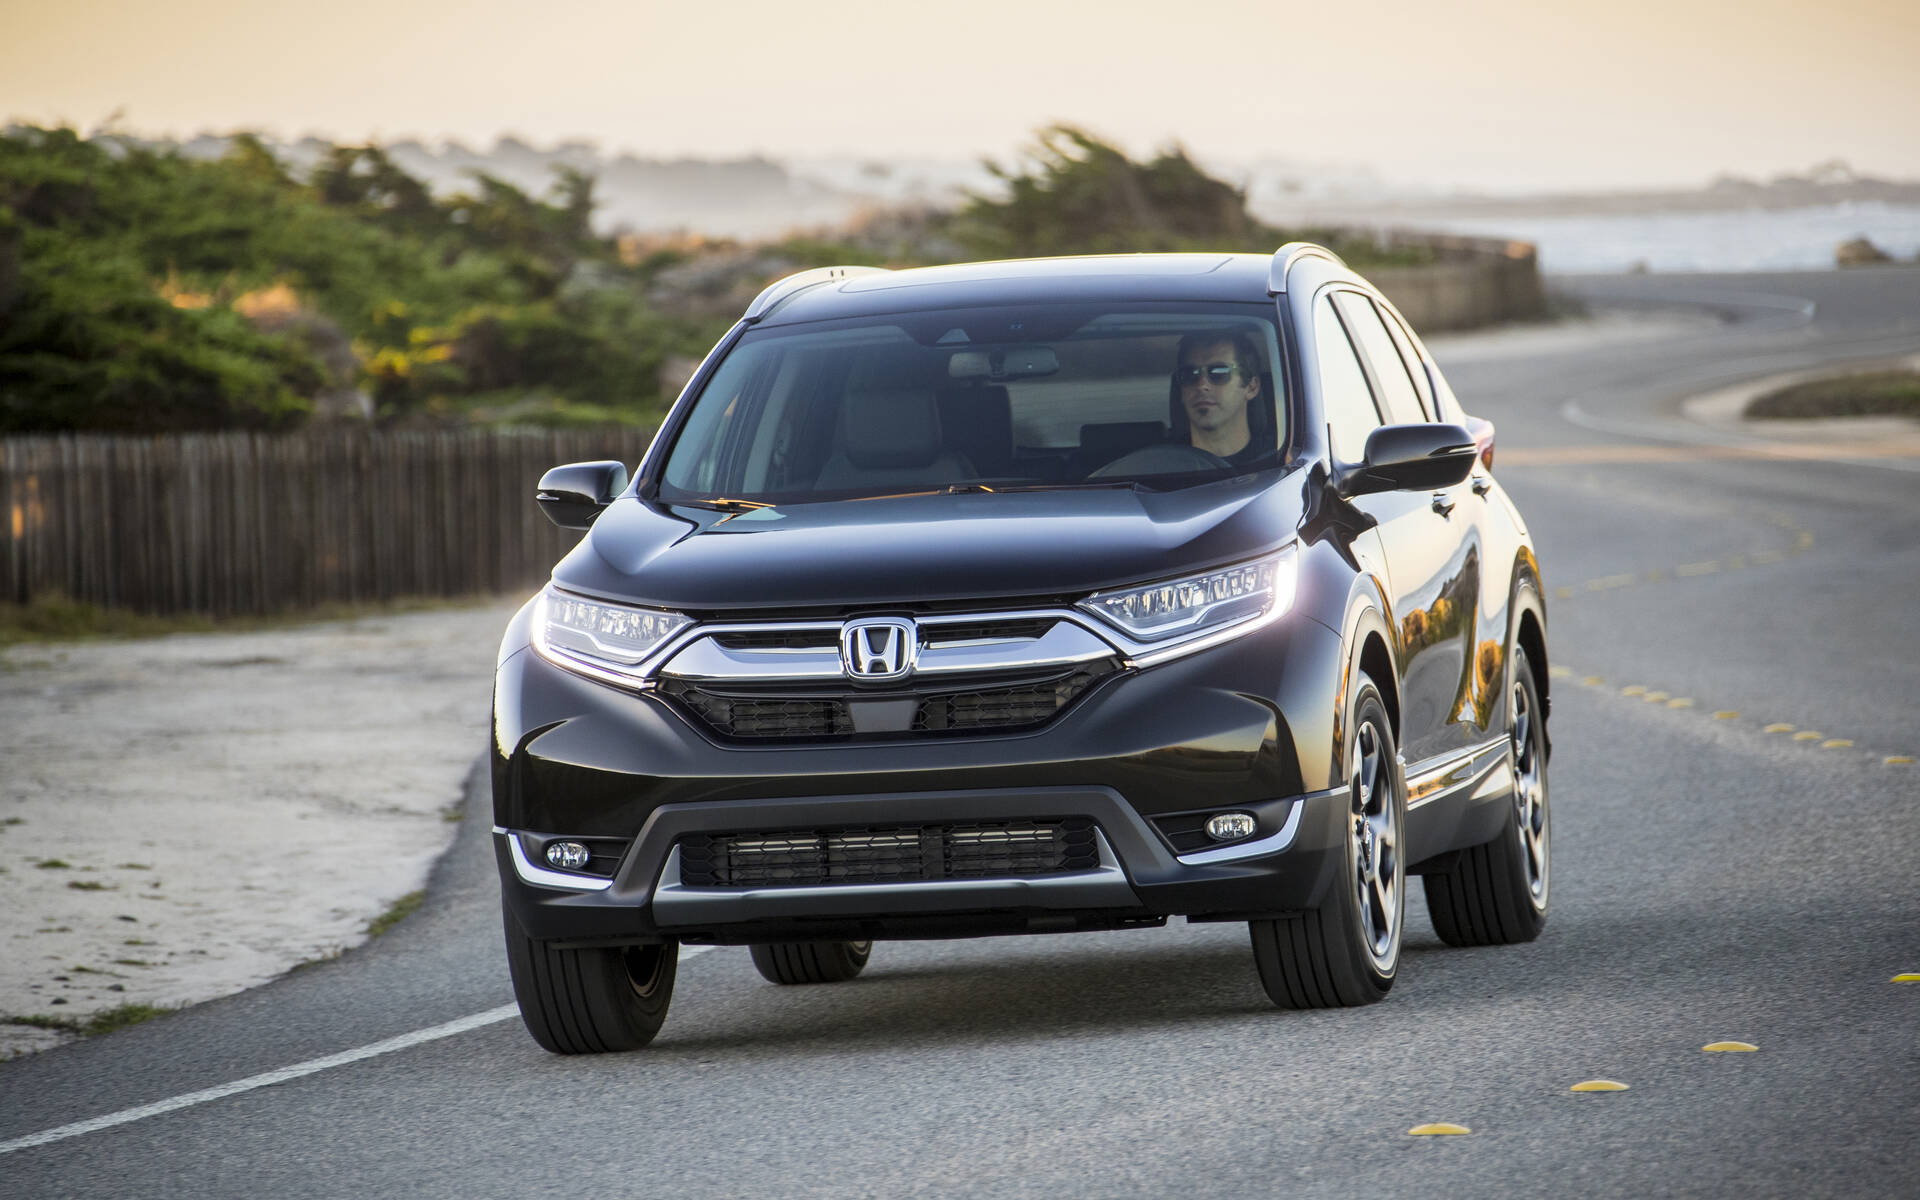 États-Unis : des Honda Accord et CR-V sous enquête pour freinage involontaire